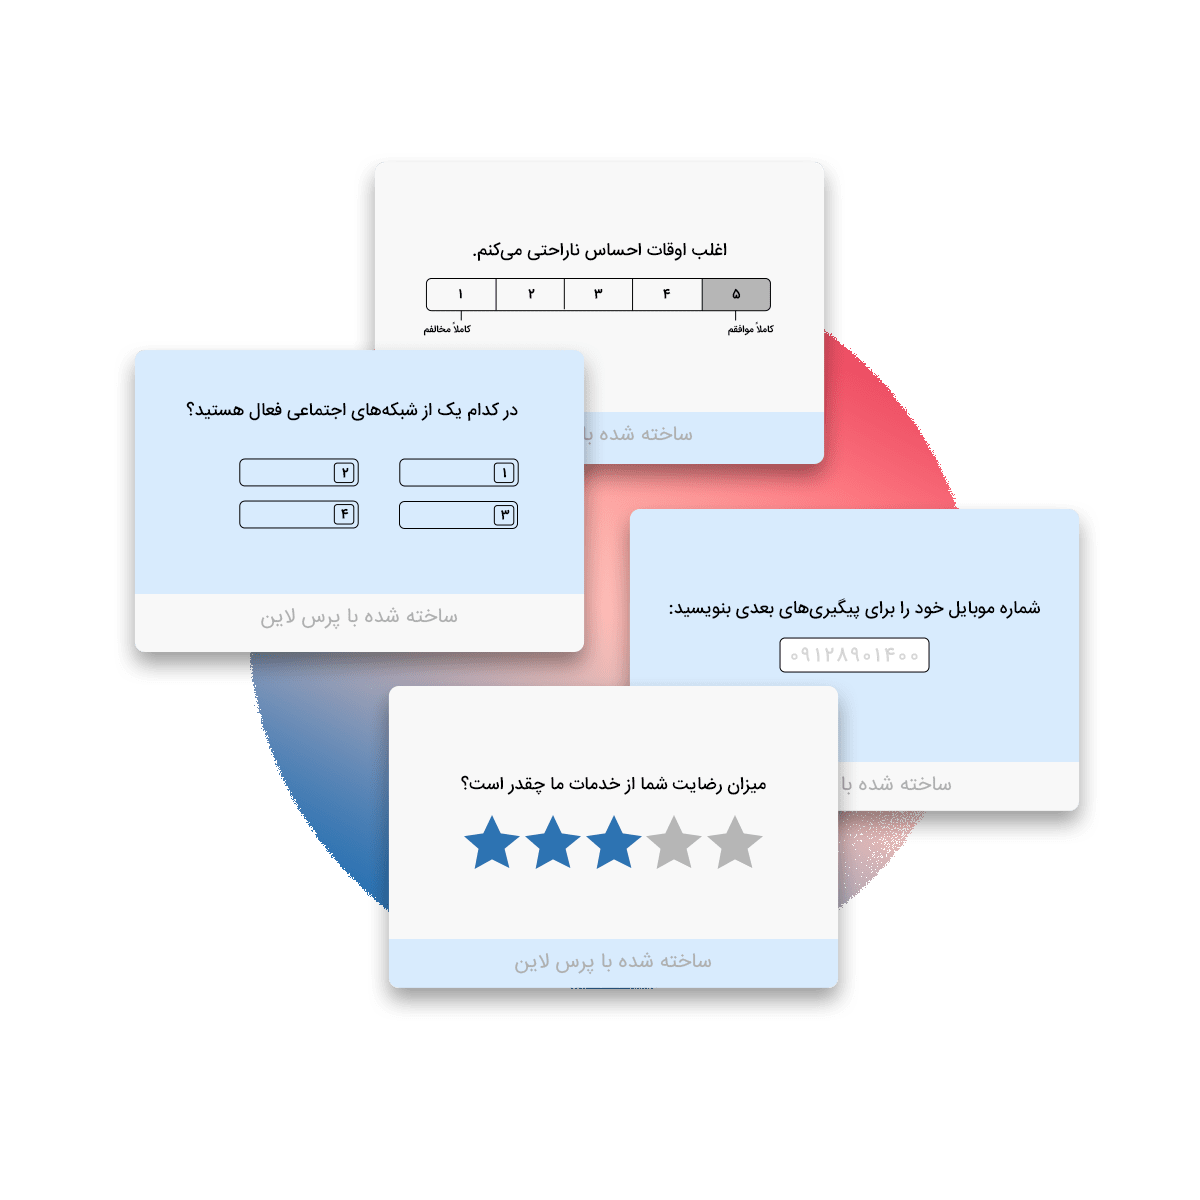 تصویر 2: پنل کاربری طراحی پرسشنامه فارسی با پرس‌لاین و امکان ساخت پرسش های طیف لیکرت، تستی و تشریحی